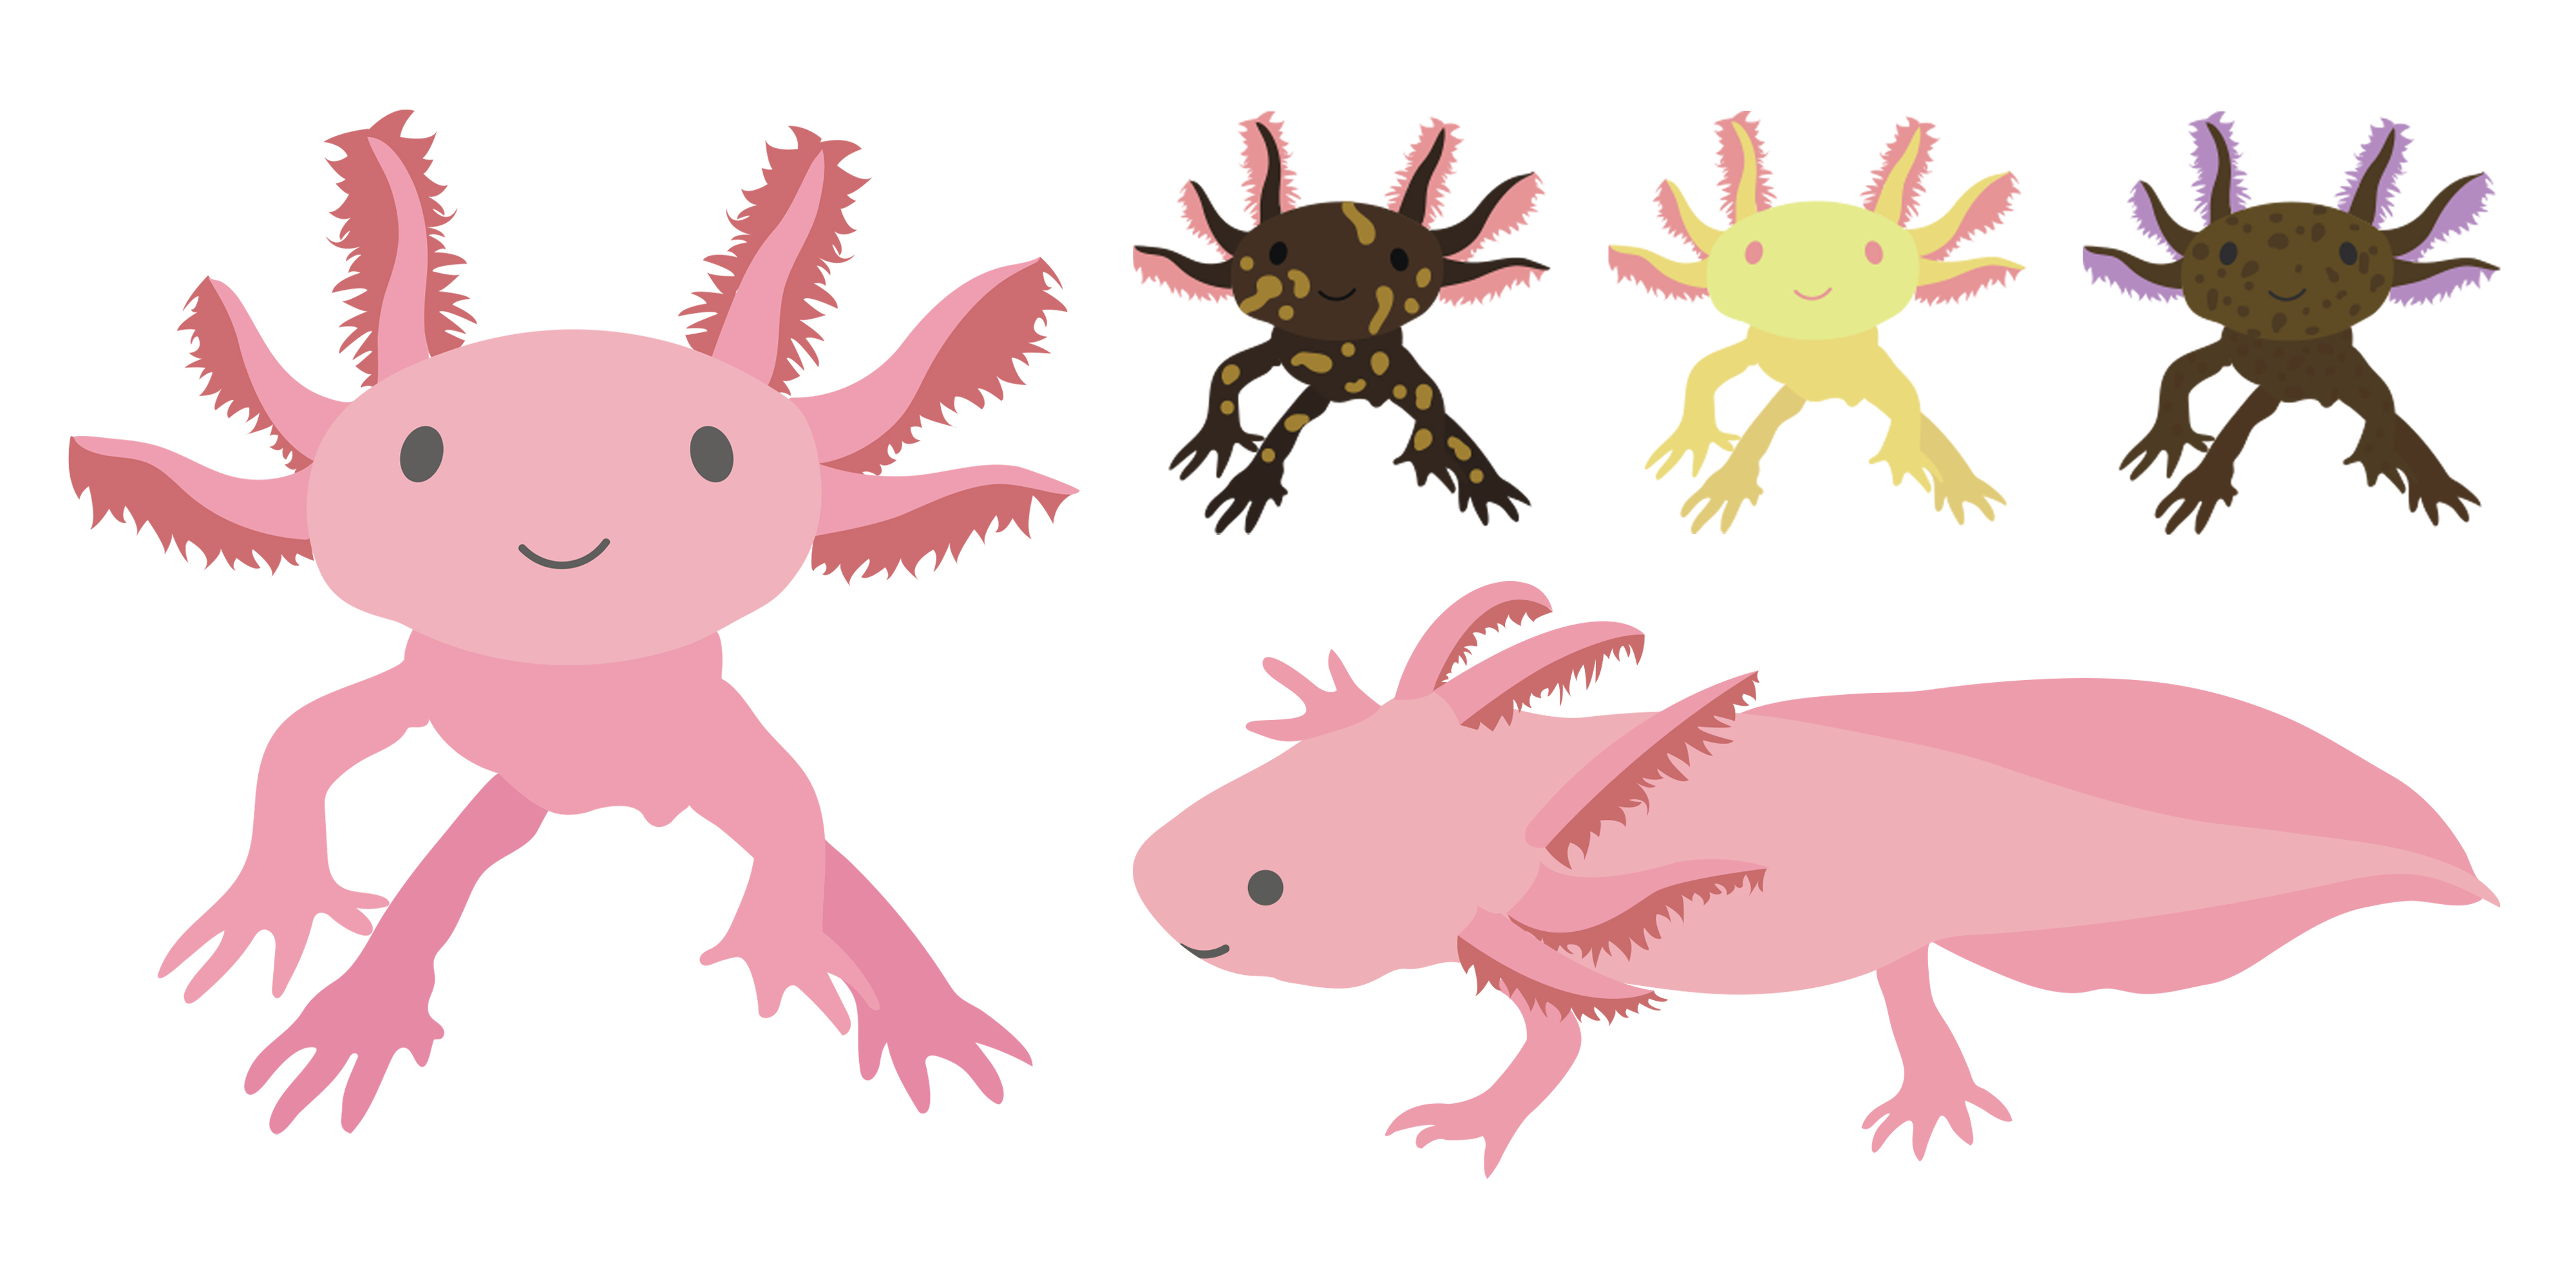 Axolotl Illustrations